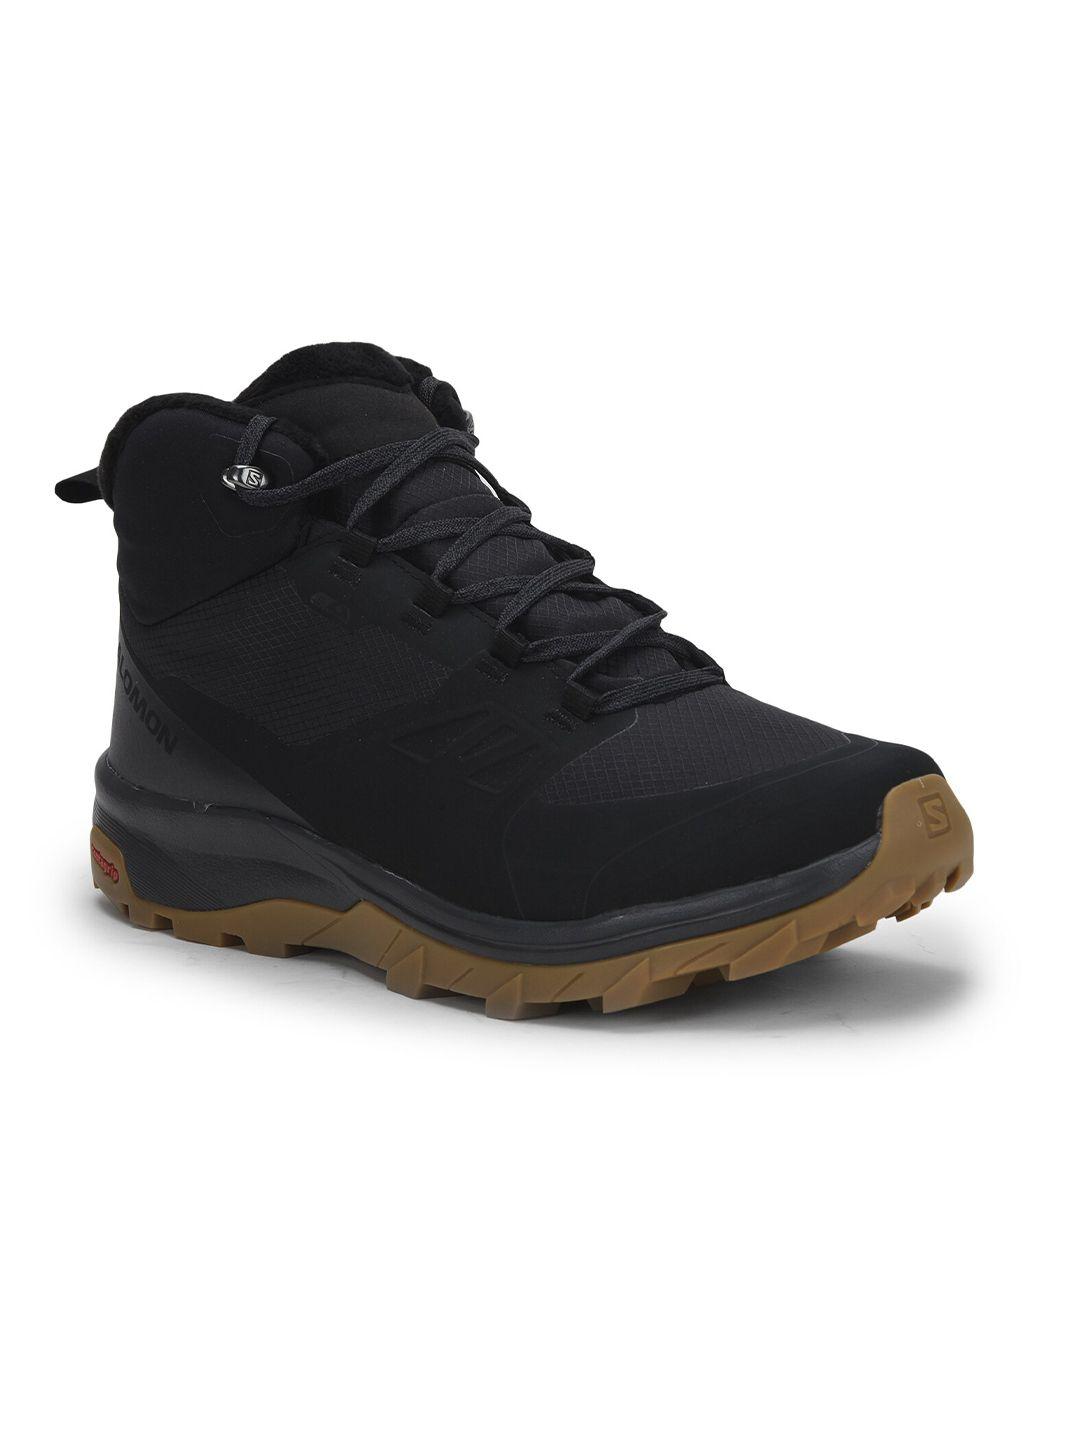 Salomon Men Black Textile Trekking Shoes